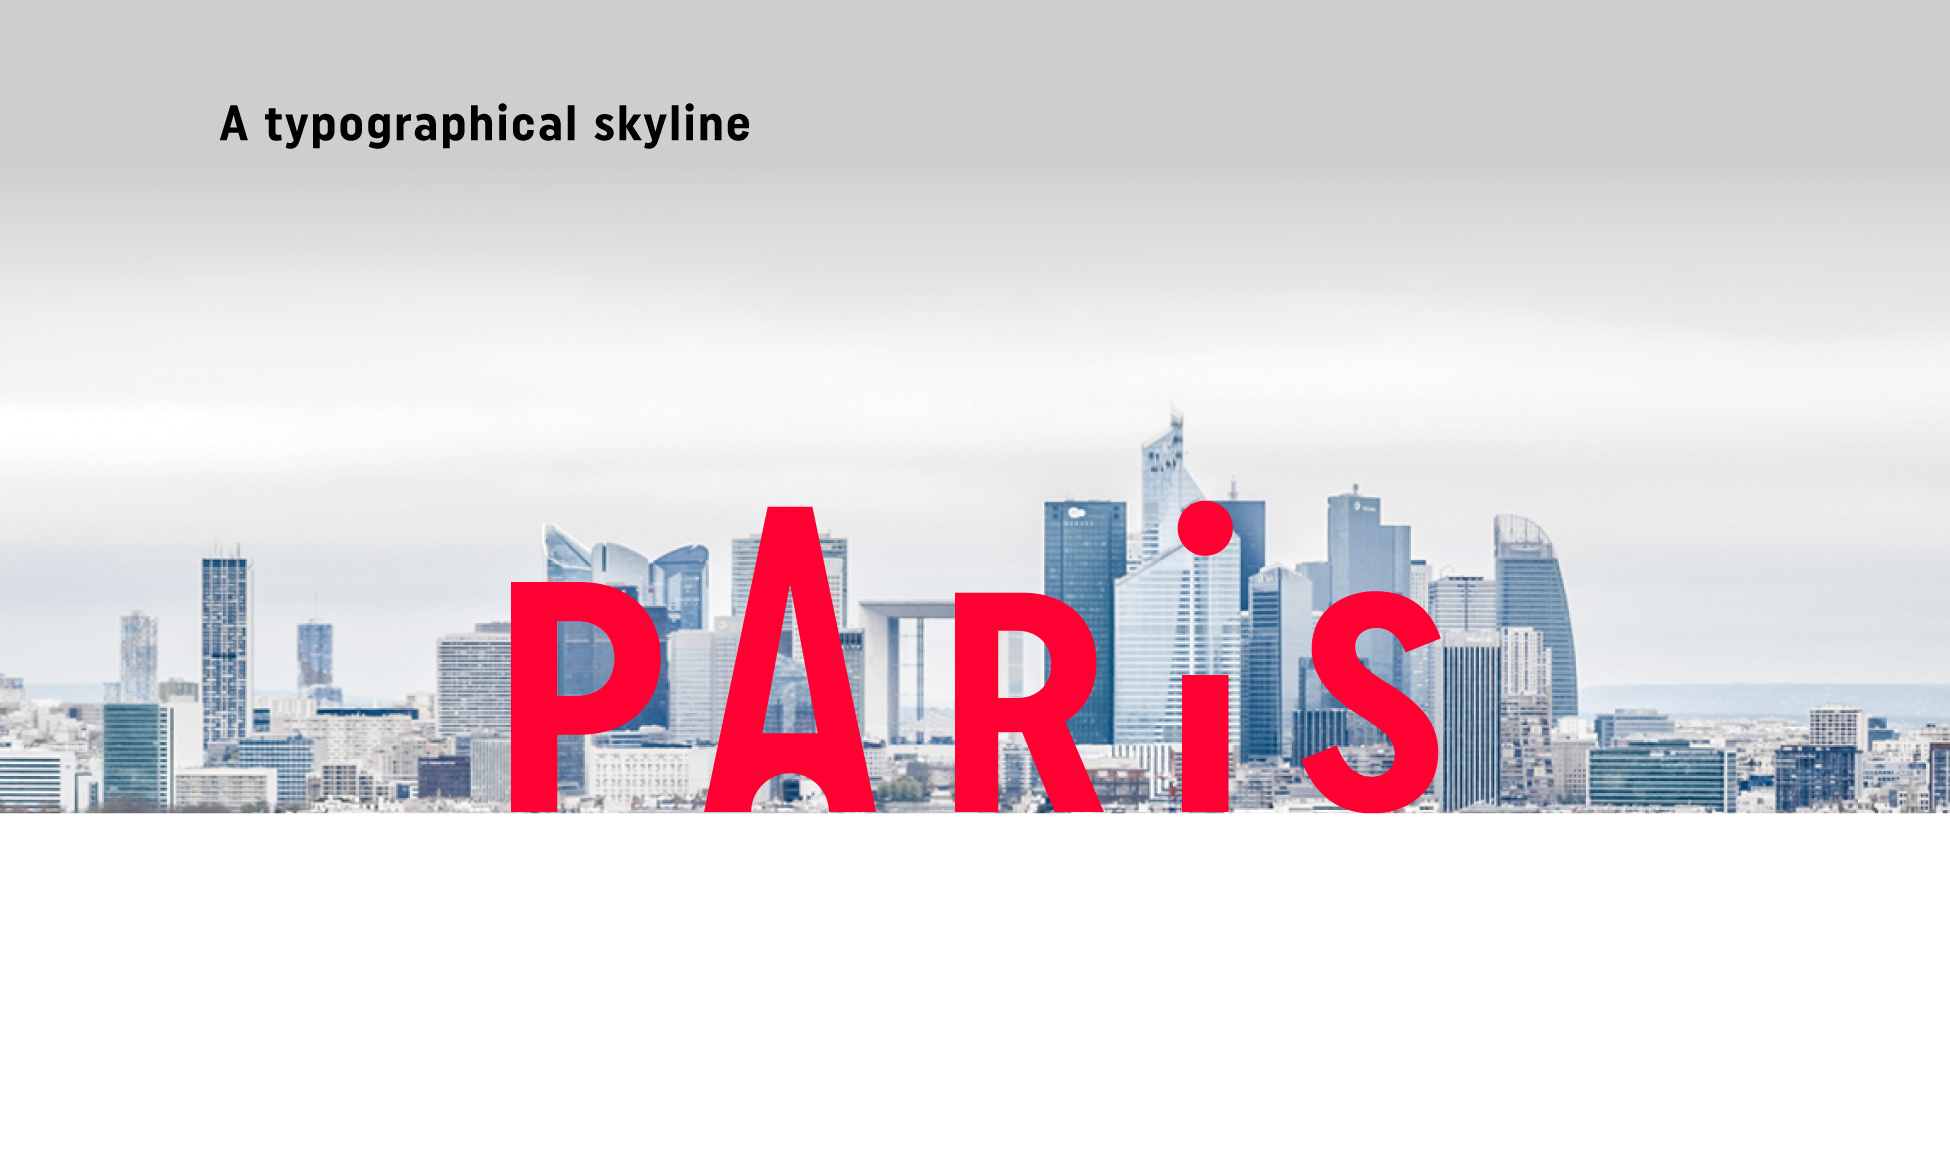 paris tourism logo